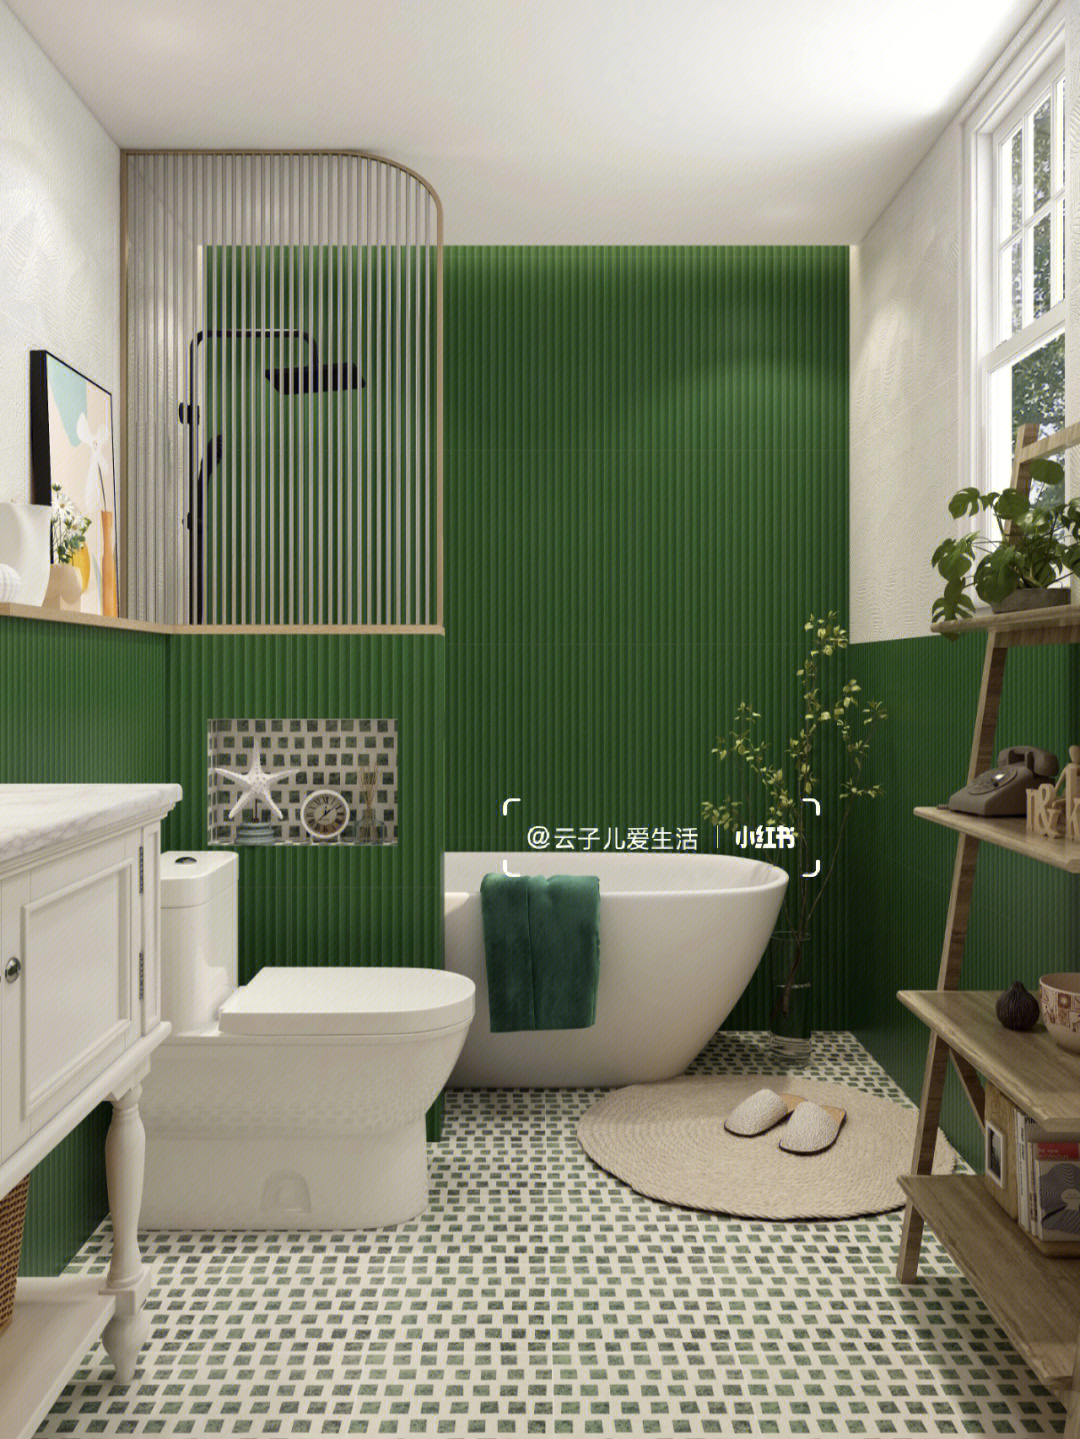 91整体风格:轻复古,清新,北欧,绿色系·91瓷砖搭配:整体采用墨绿